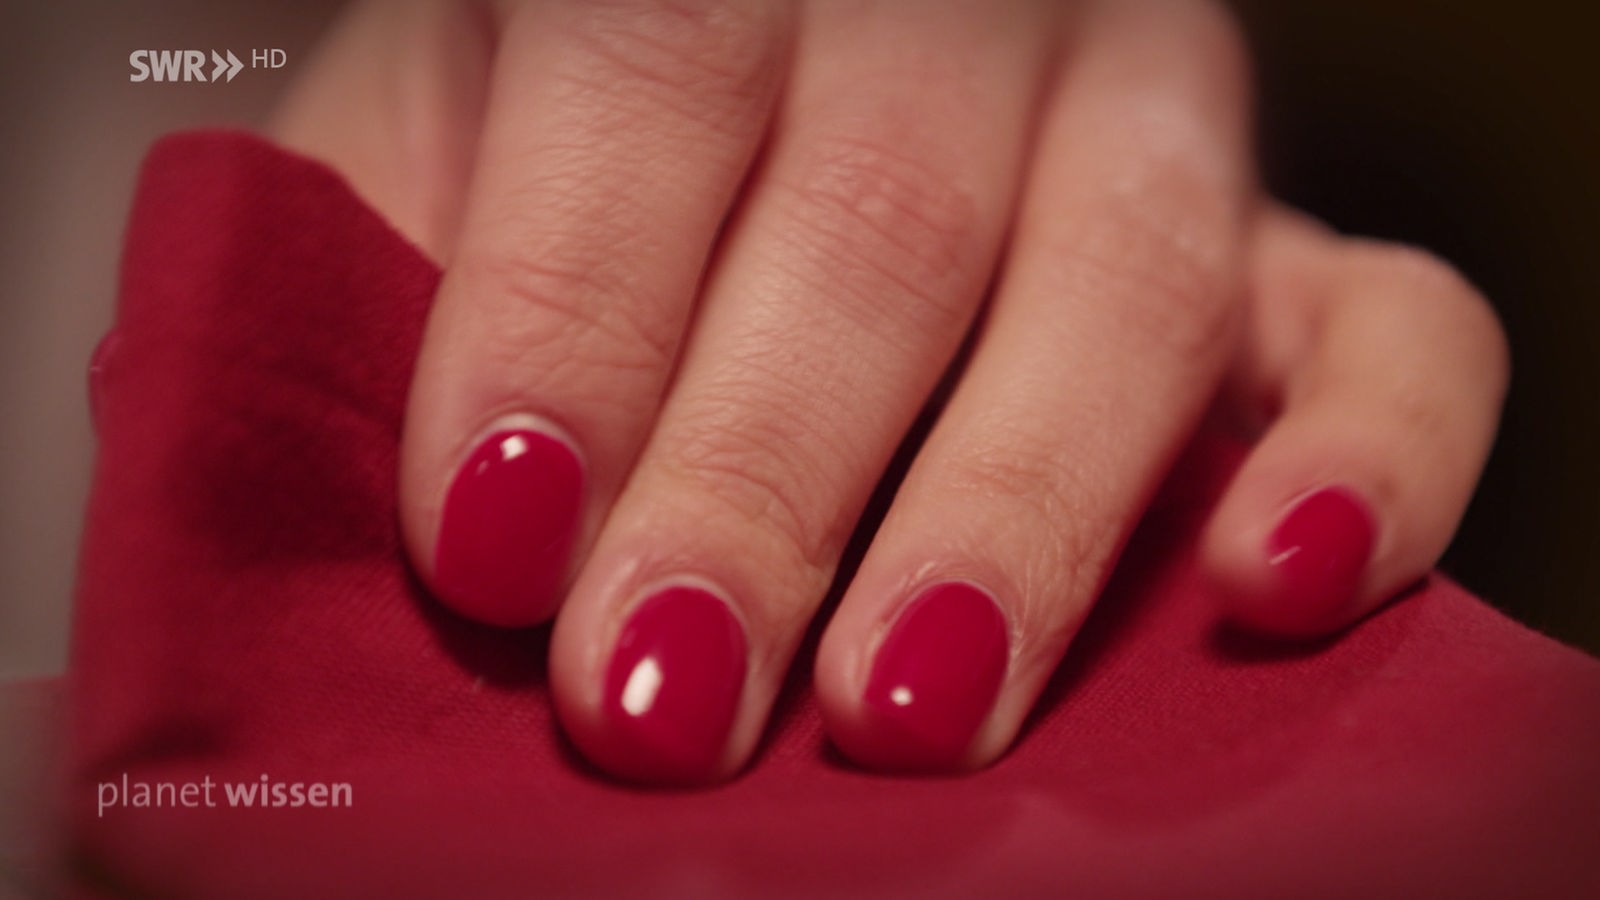 Eine Frauenhand mit rot lackierten Nägeln fassteine rote Stoffserviette.